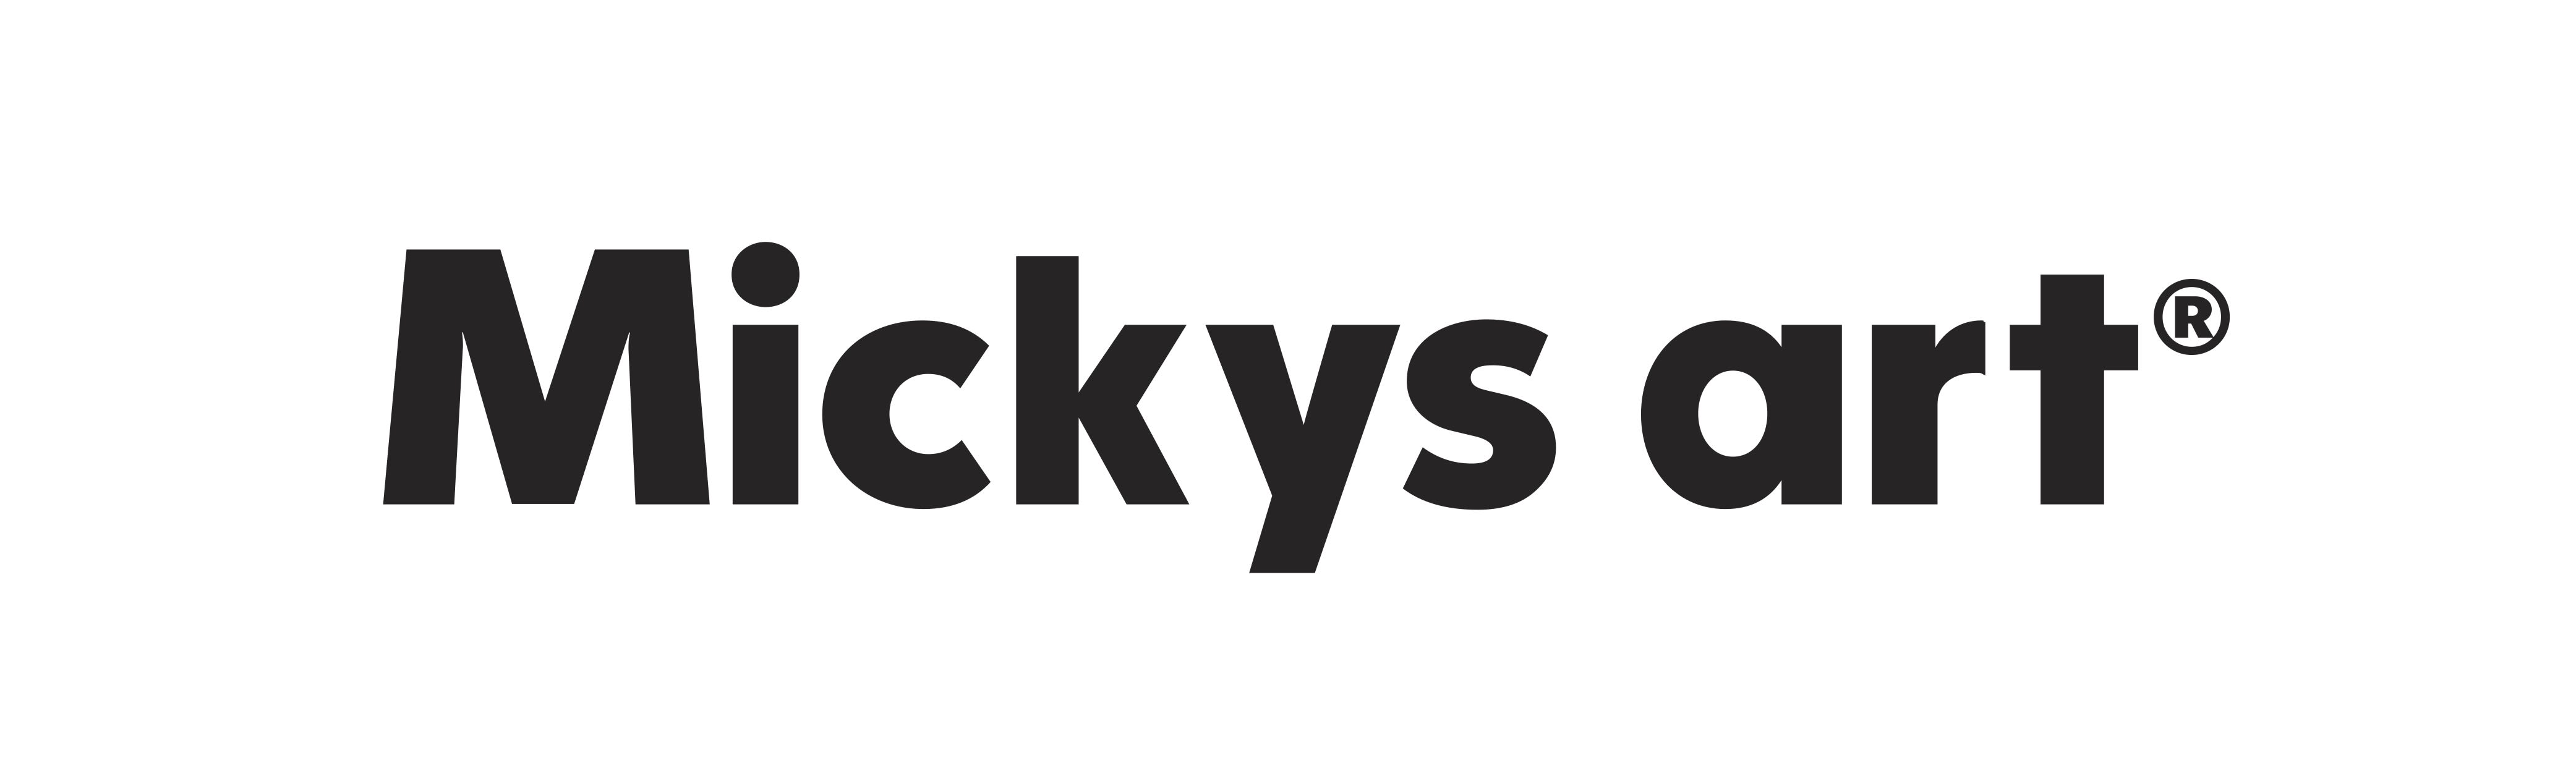 Mickys art company logo